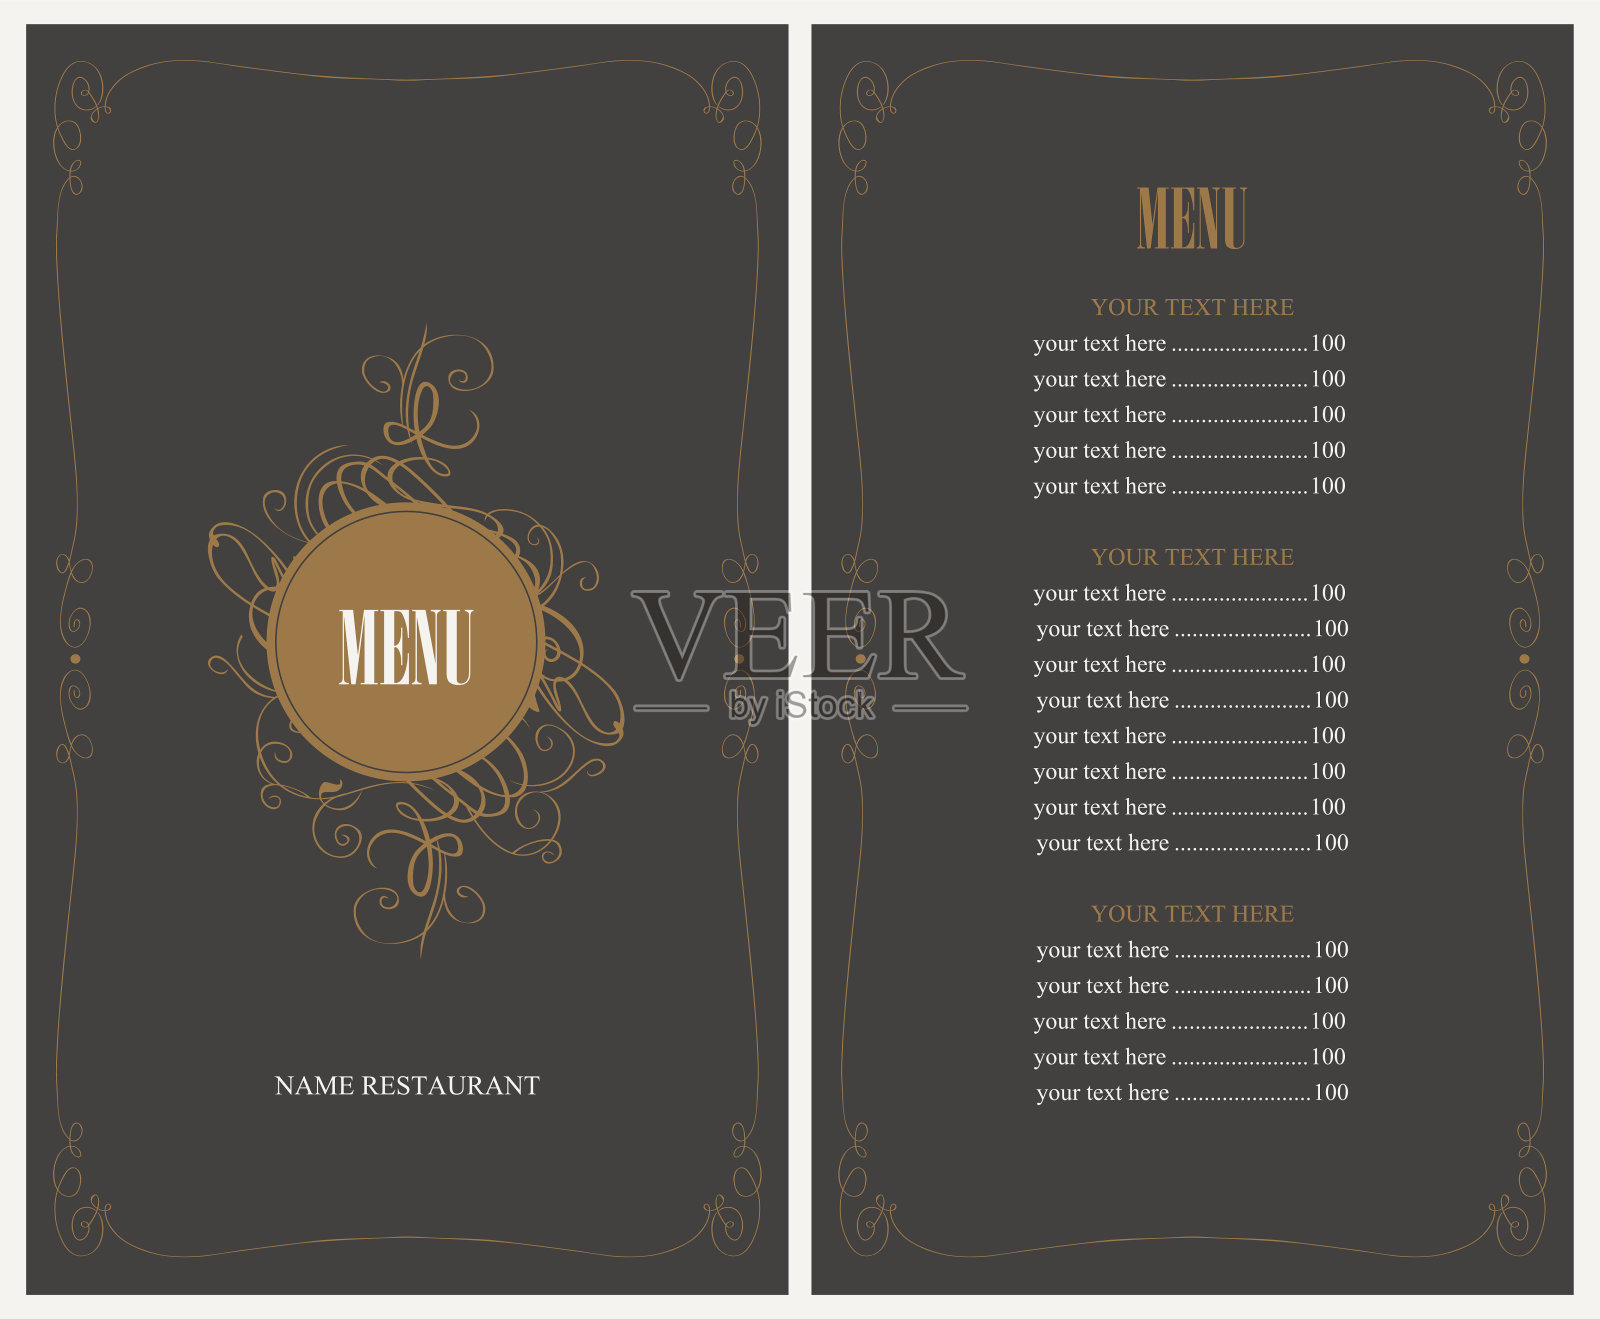 餐厅菜单设计模板素材